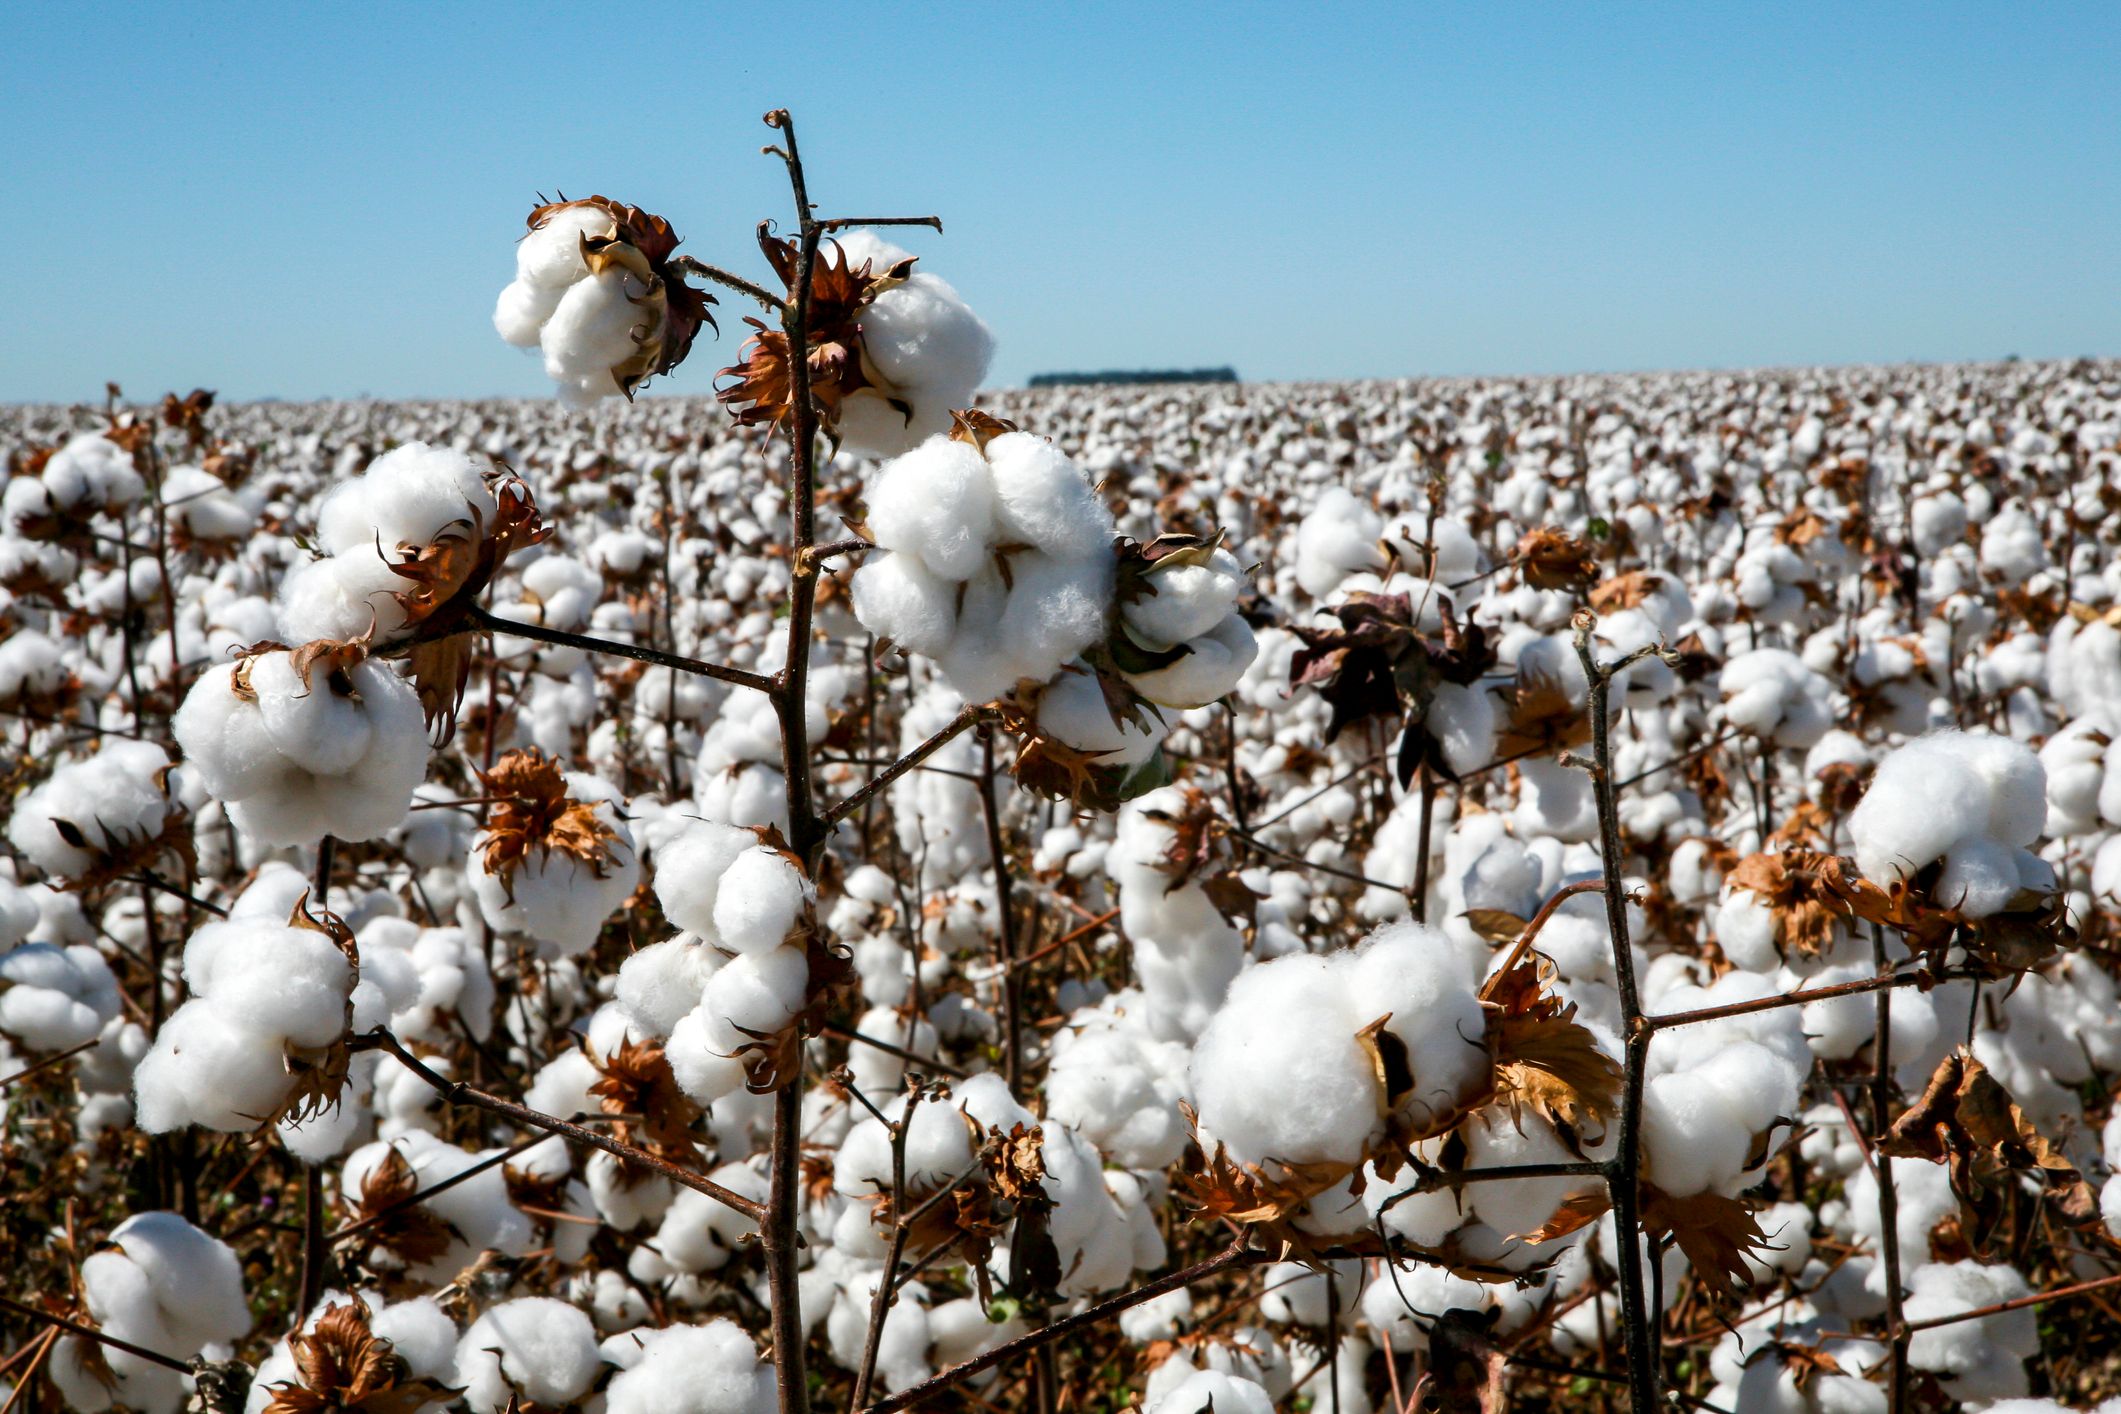 Cultivo de algodón: Desde la siembra hasta la recolección, todo lo que  debes saber